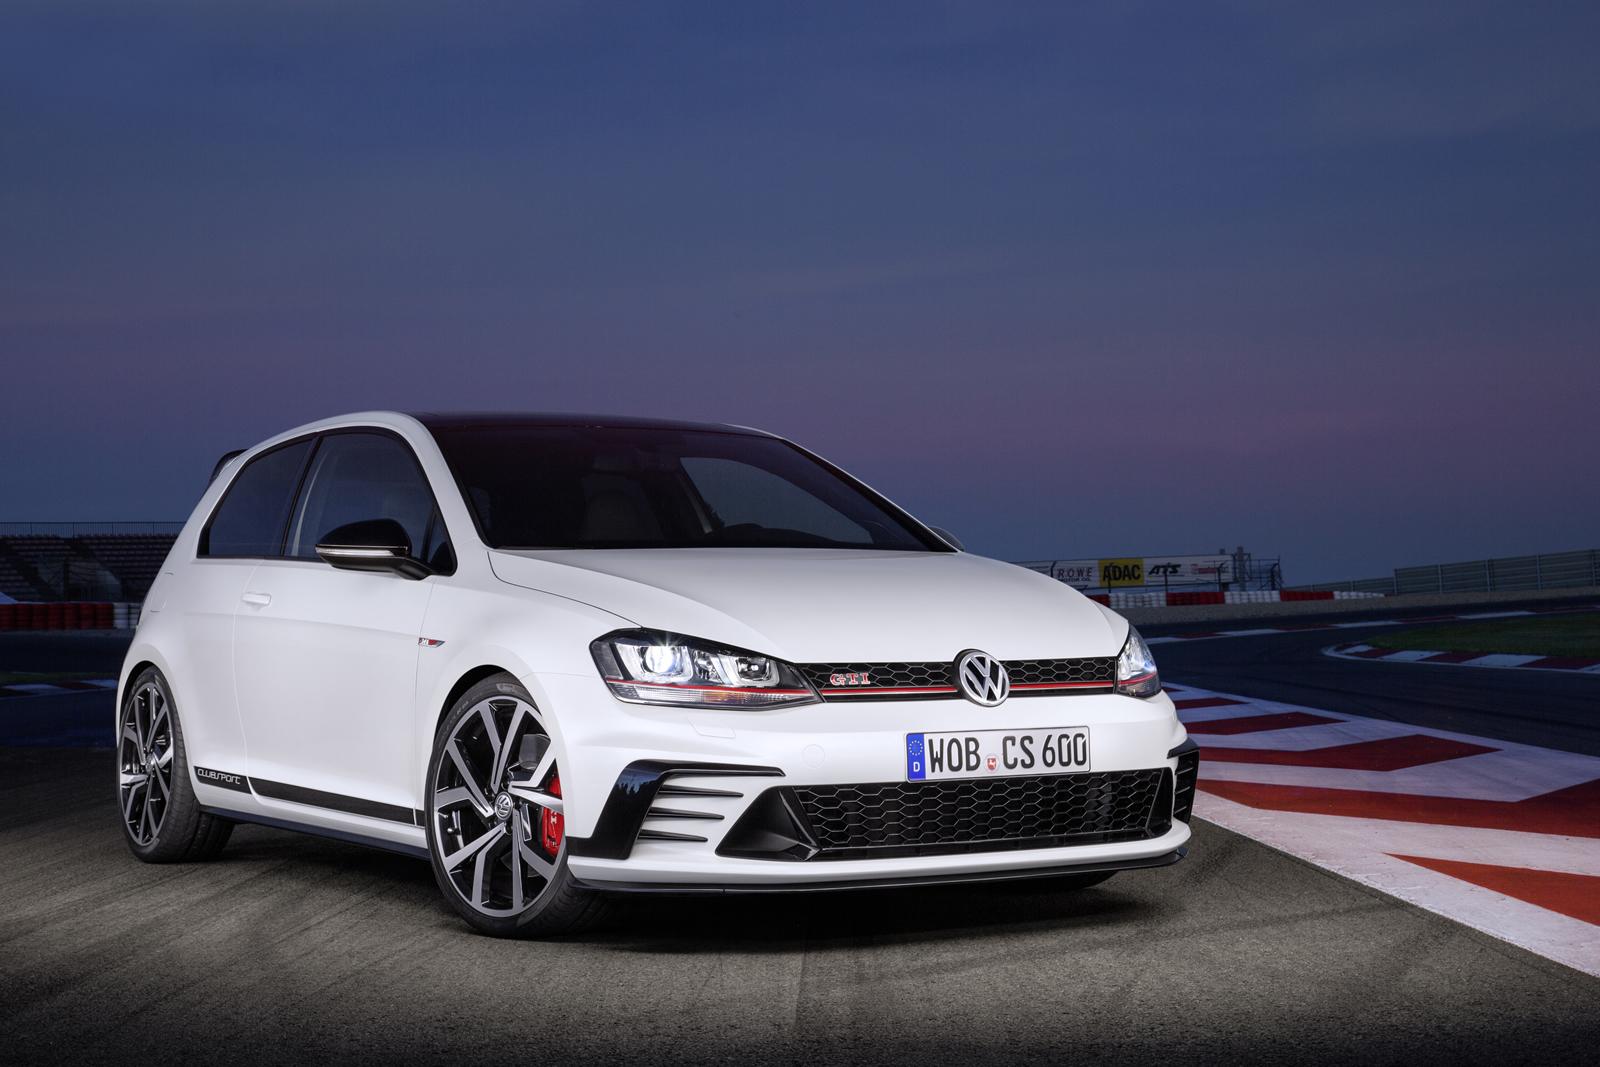 La locura, Volkswagen está preparando un Golf GTI Clubsport aún más extremo